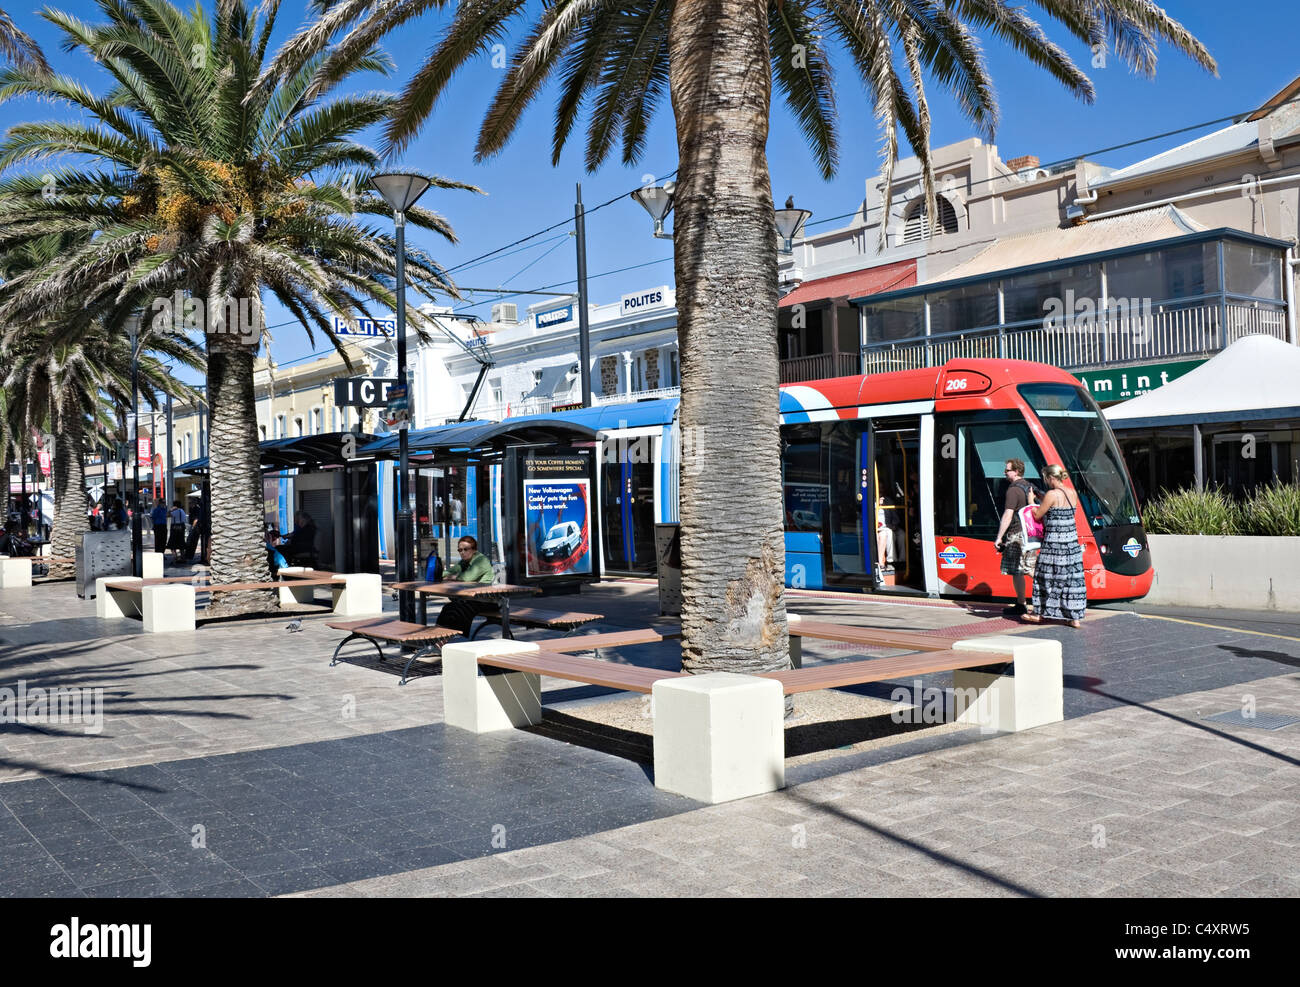 Adelaide Metro moderne au terminus de tram dans la banlieue côtière de Glenelg Australie du Sud Banque D'Images